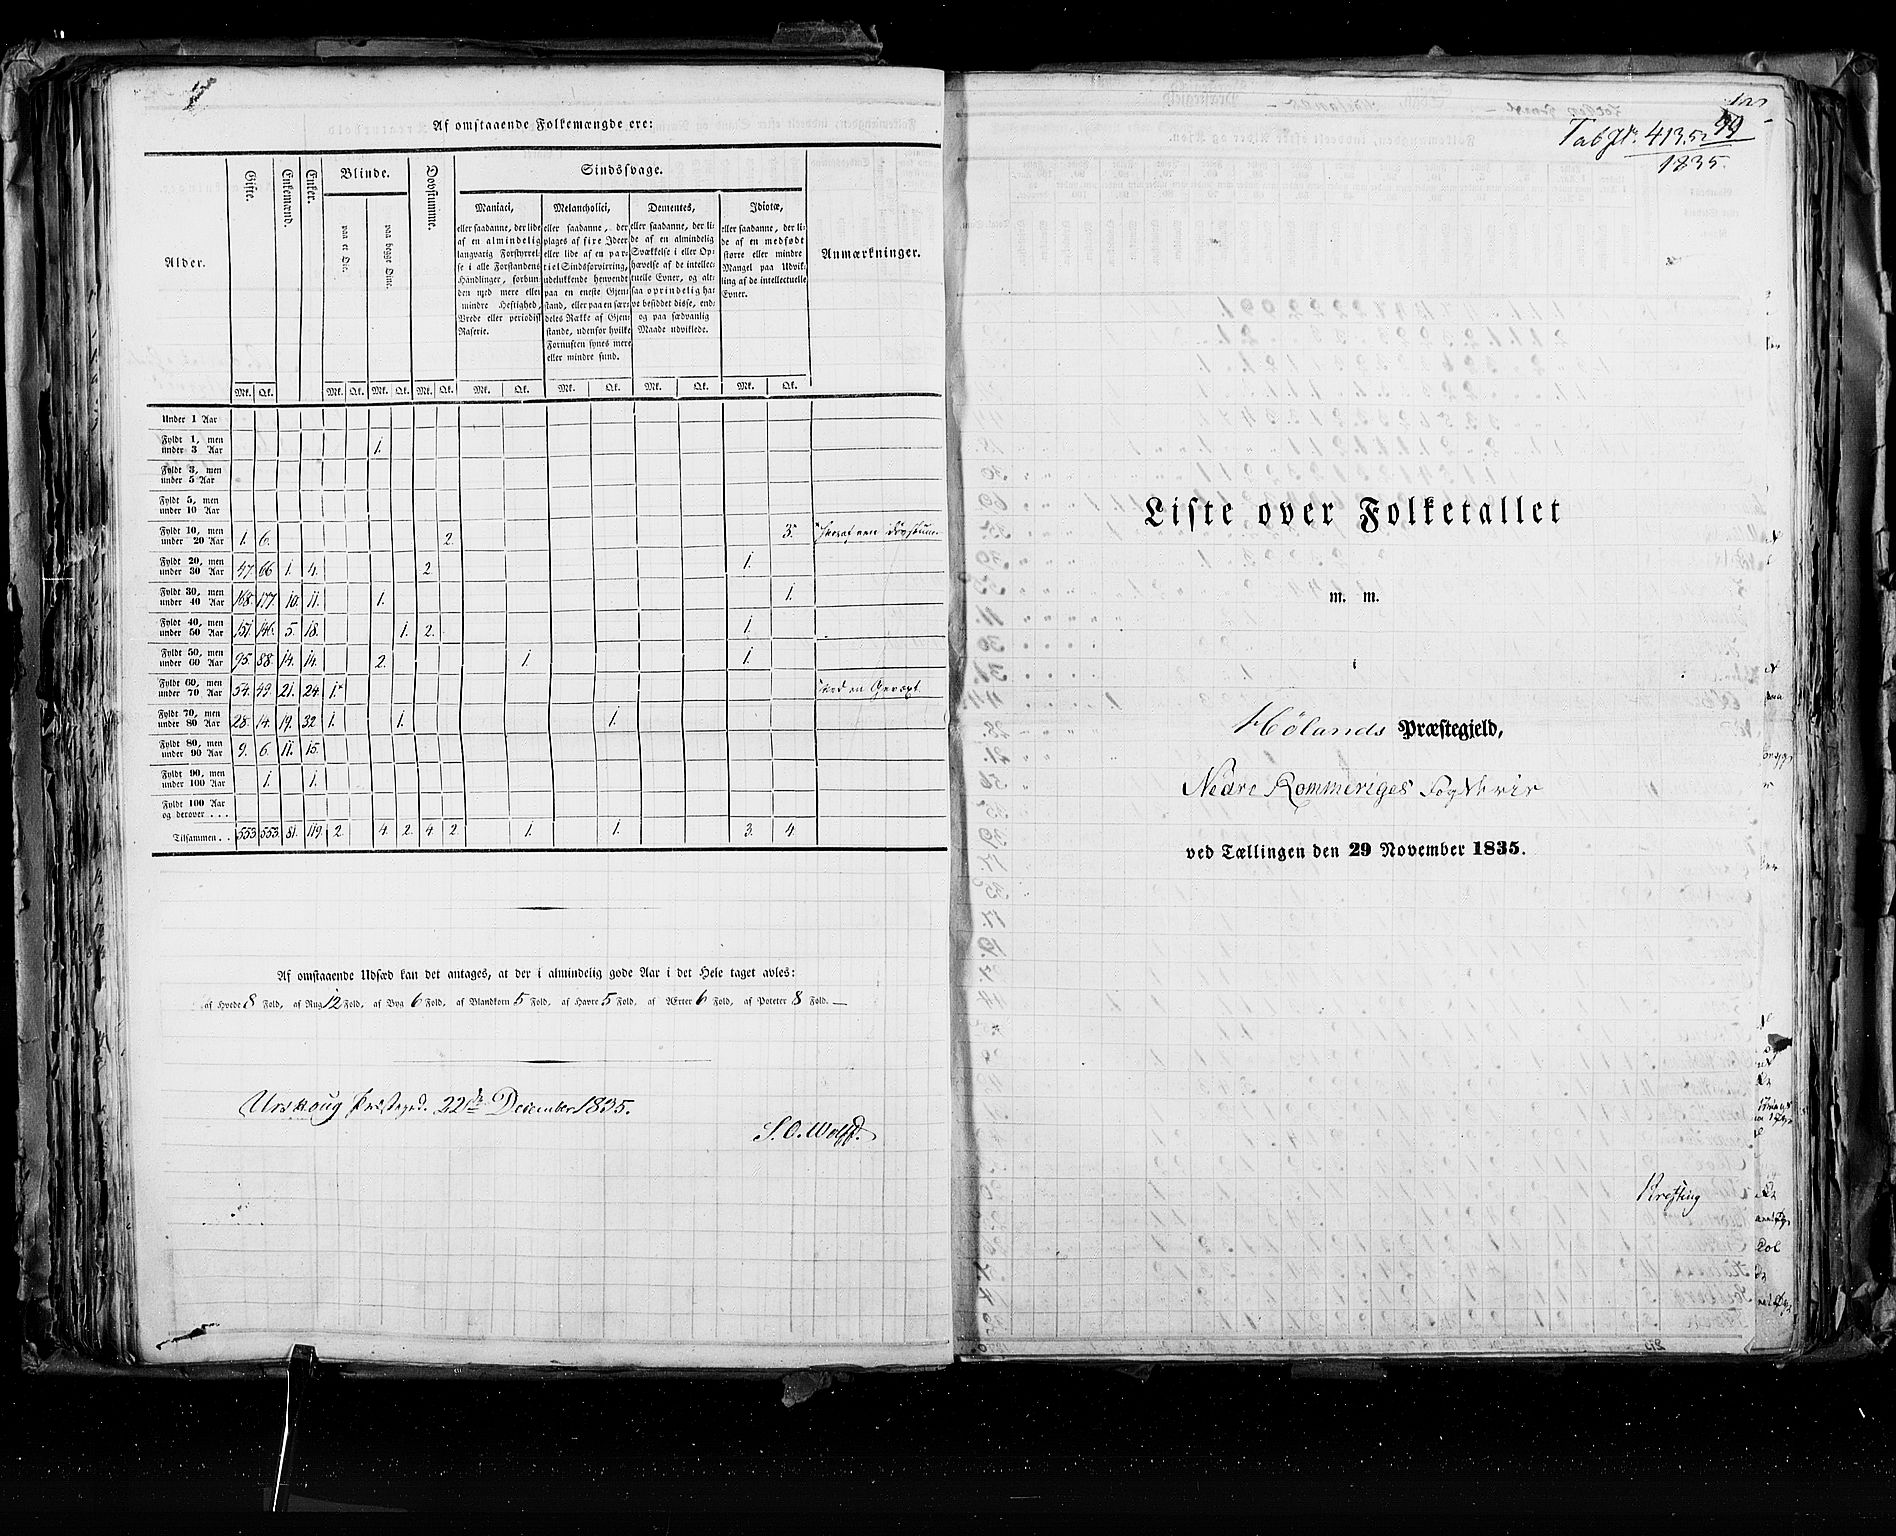 RA, Census 1835, vol. 2: Akershus amt og Smålenenes amt, 1835, p. 99